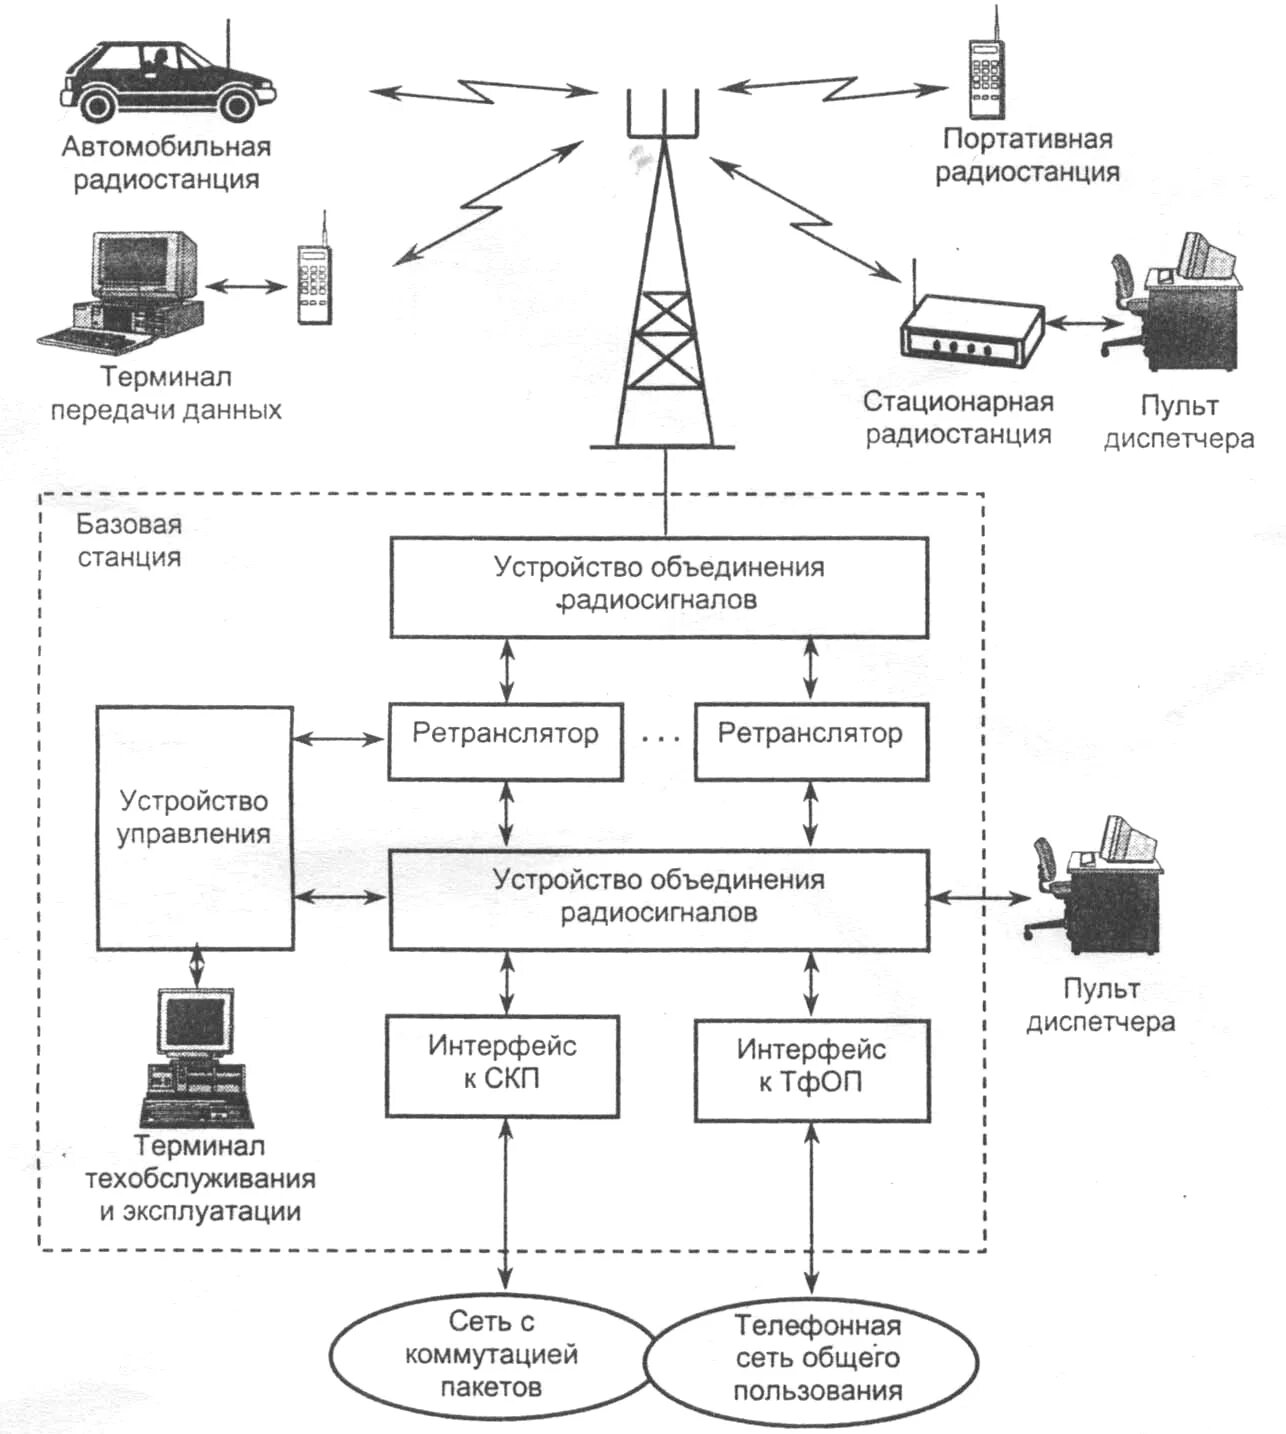 Организация пунктов связи. Схема организации транкинговой радиосвязи. Структурная схема транкинговой связи. Структурная схема беспроводной связи DECT. Транкинговая радиосвязь Tetra.